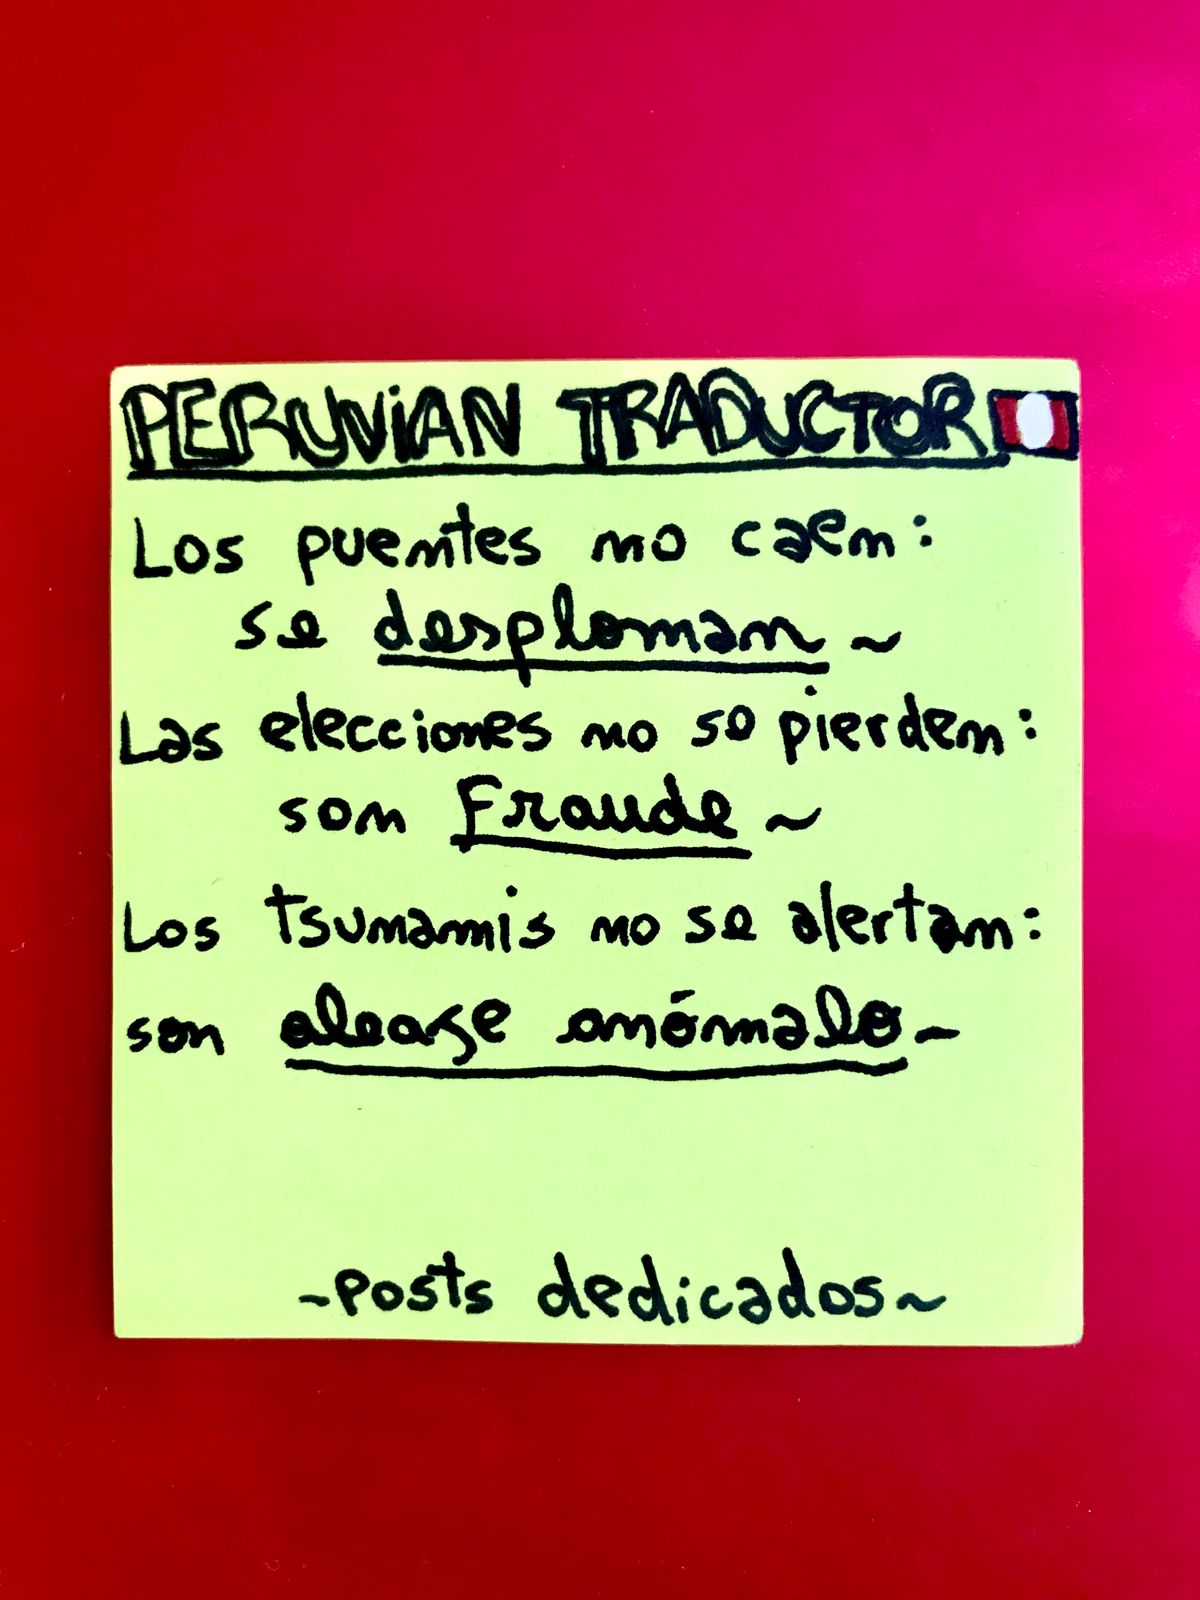 Peruvian Traductor